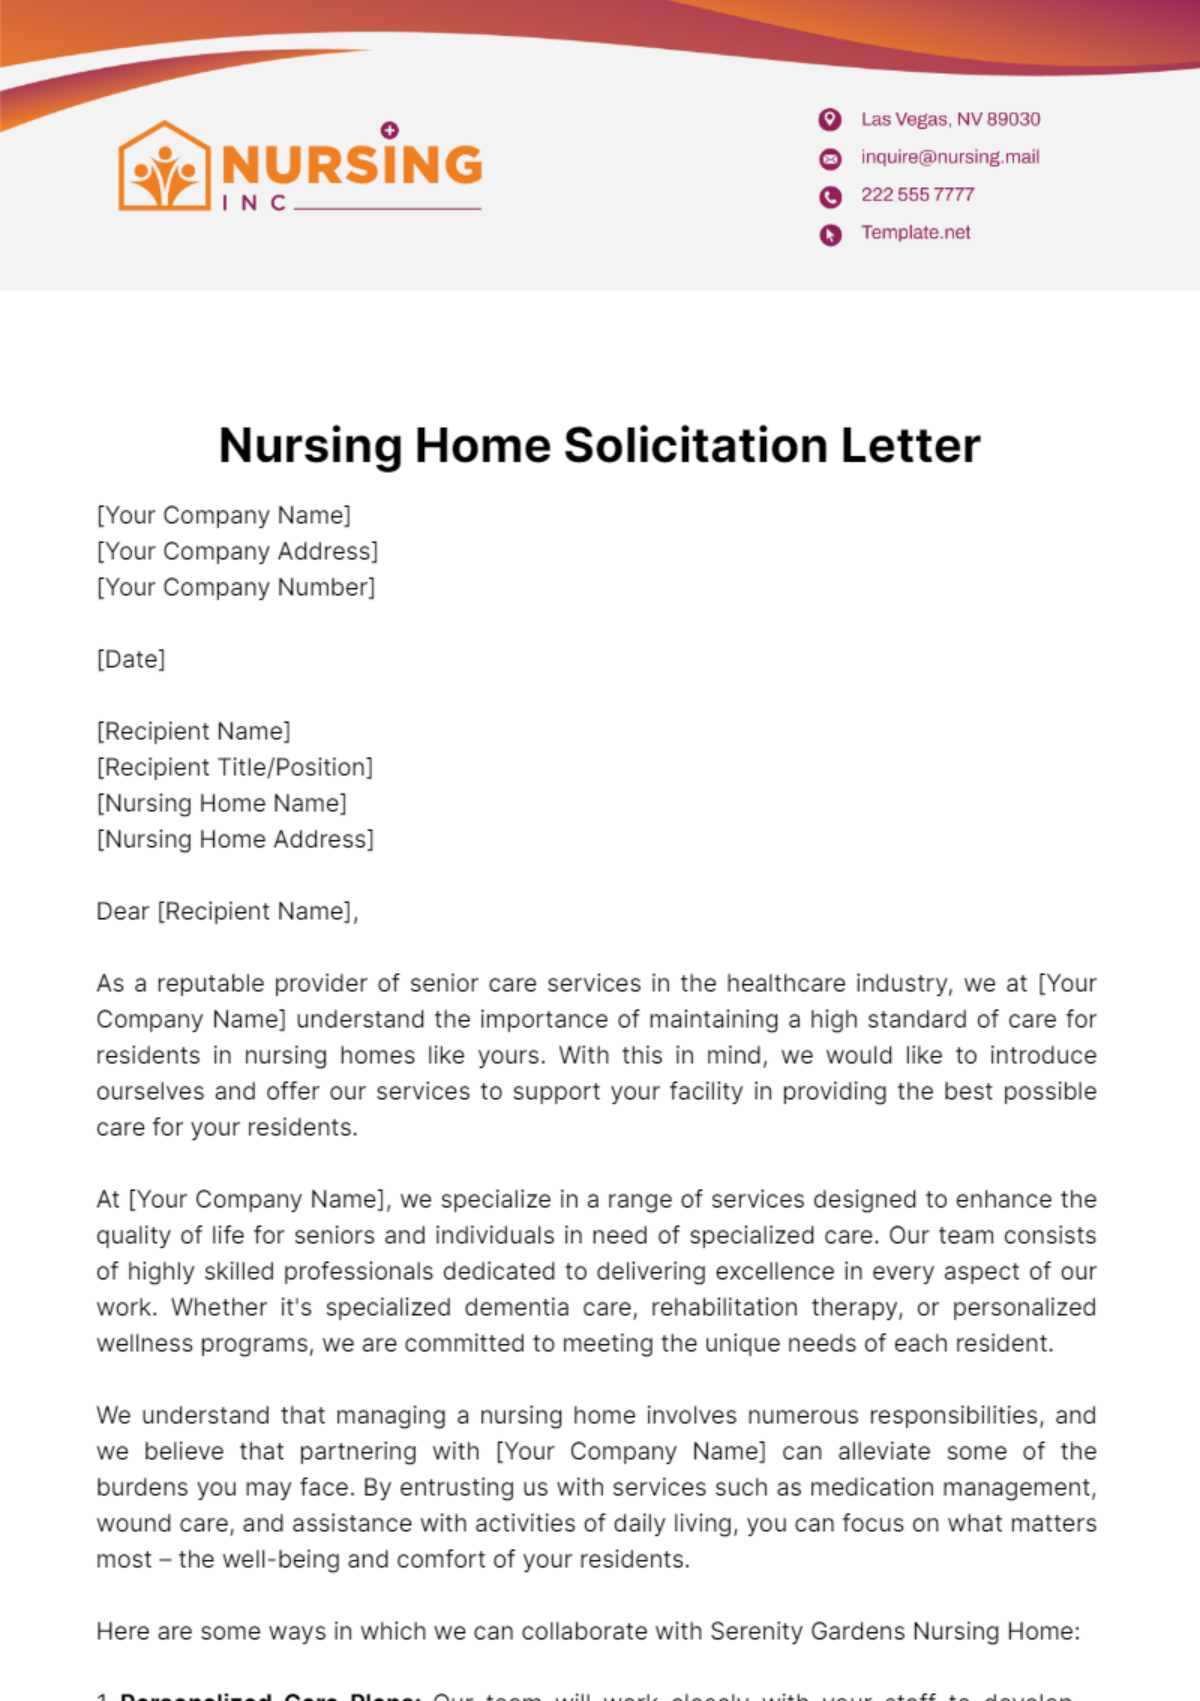 Nursing Home Solicitation Letter Template